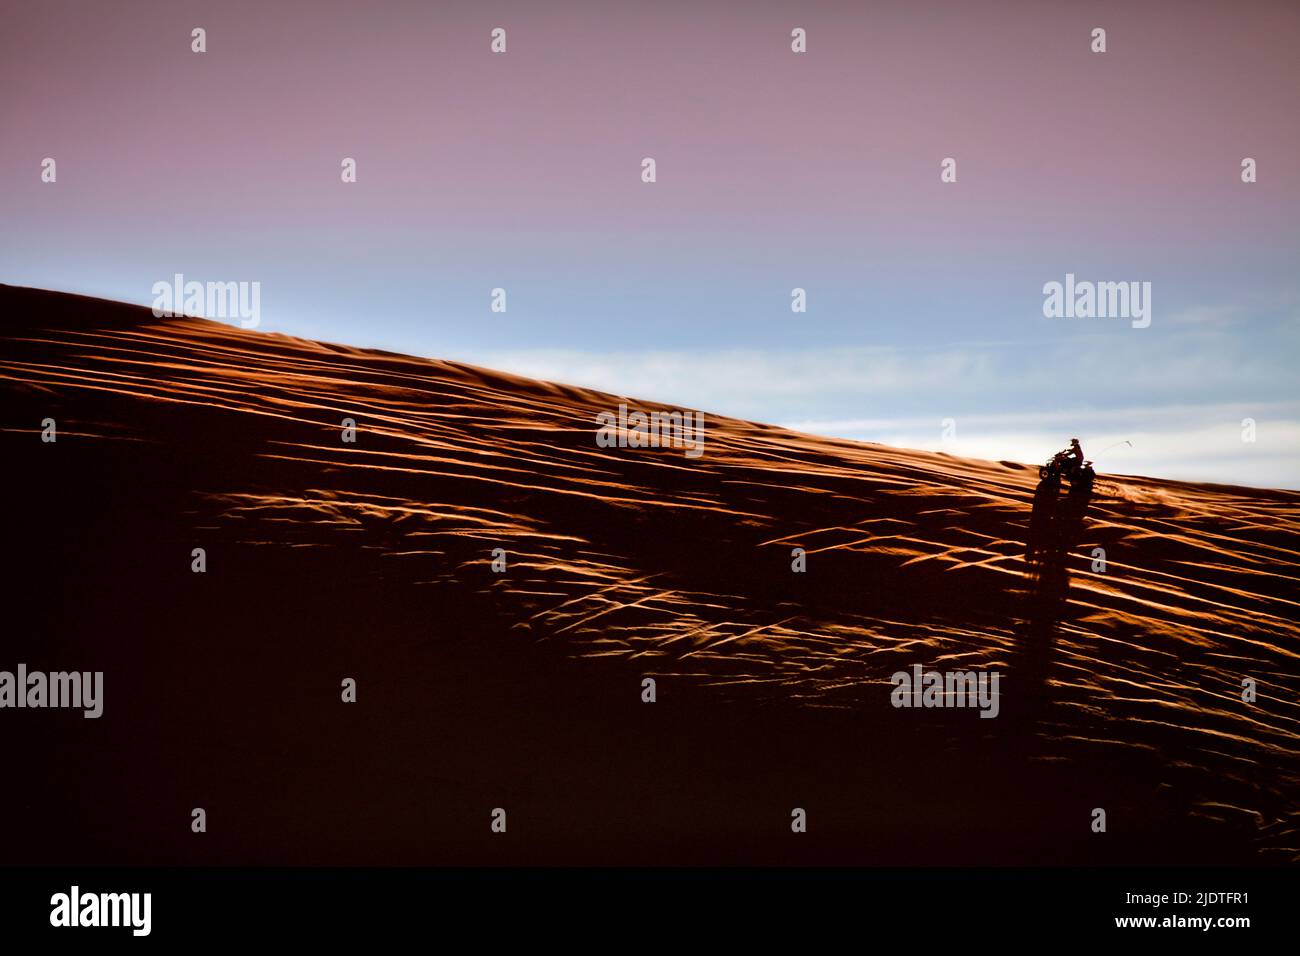 Monter en VTT sur la crête d'une dune de sable au coucher du soleil. Les dunes de Dumont Dunes, près de la vallée de la mort, sont croisées avec tir Banque D'Images